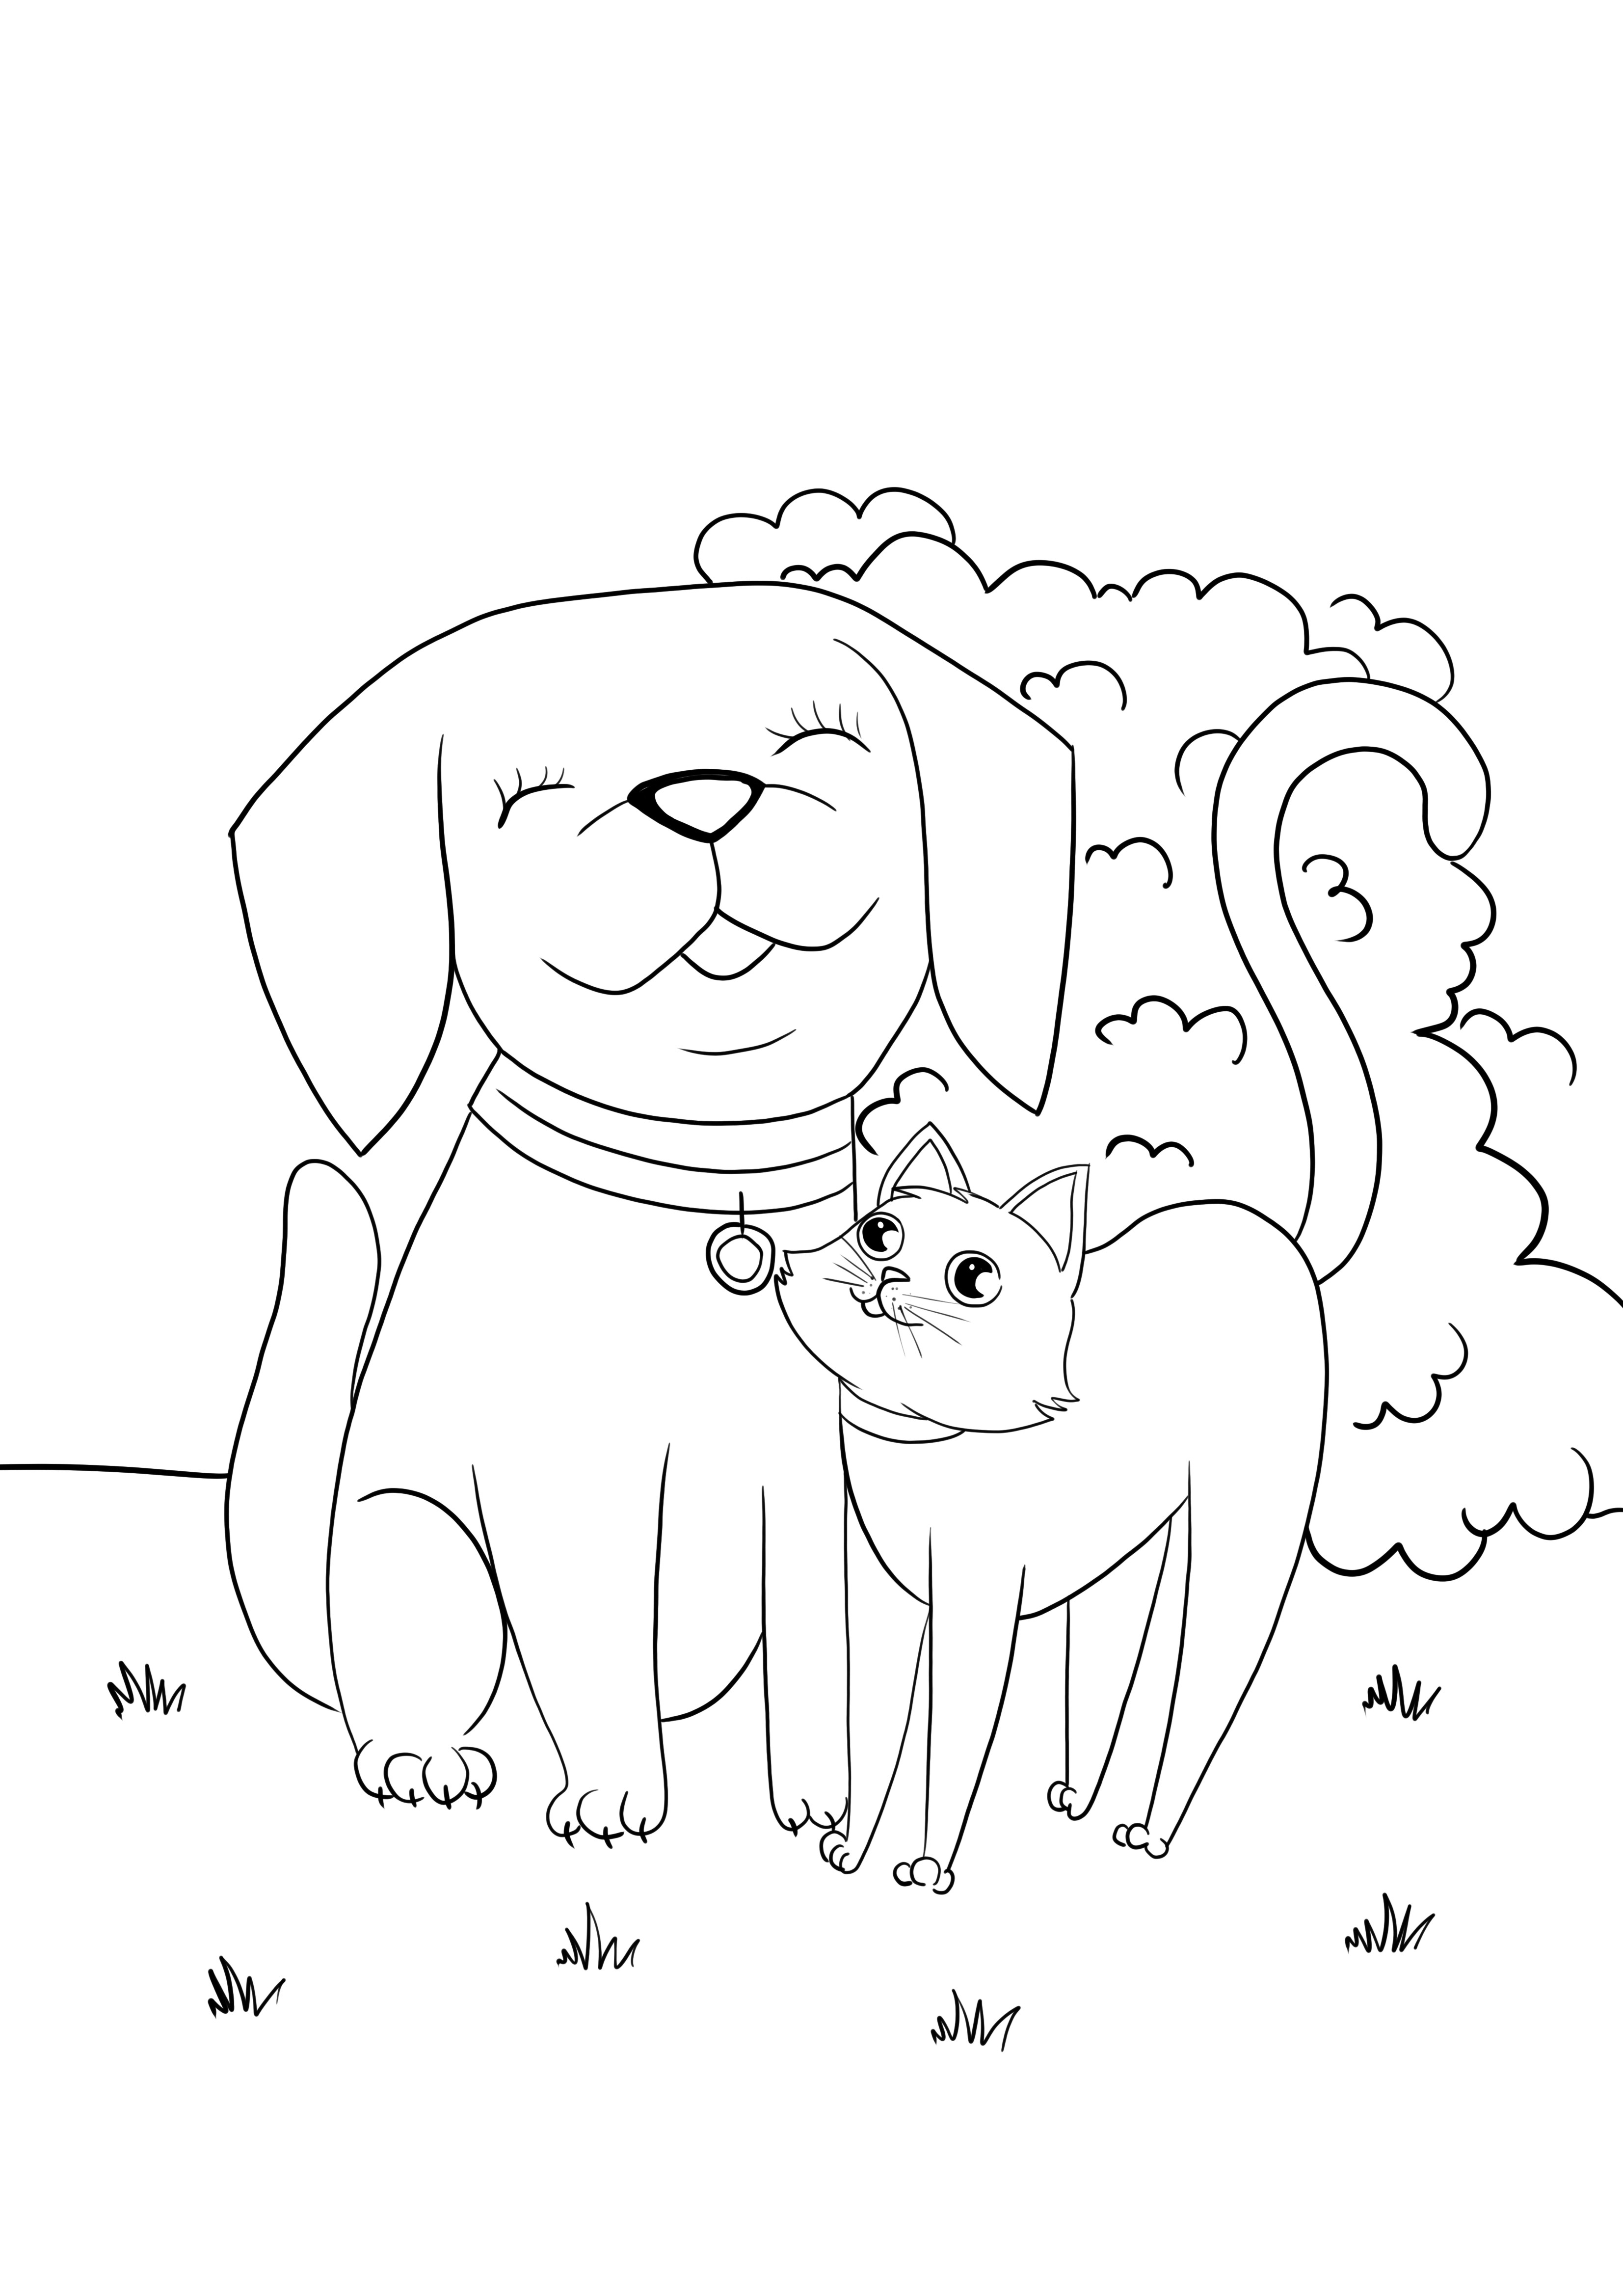 Imagine de câine și pisică care se îmbrățișează pentru colorat și gratuit pentru imprimare sau descărcare